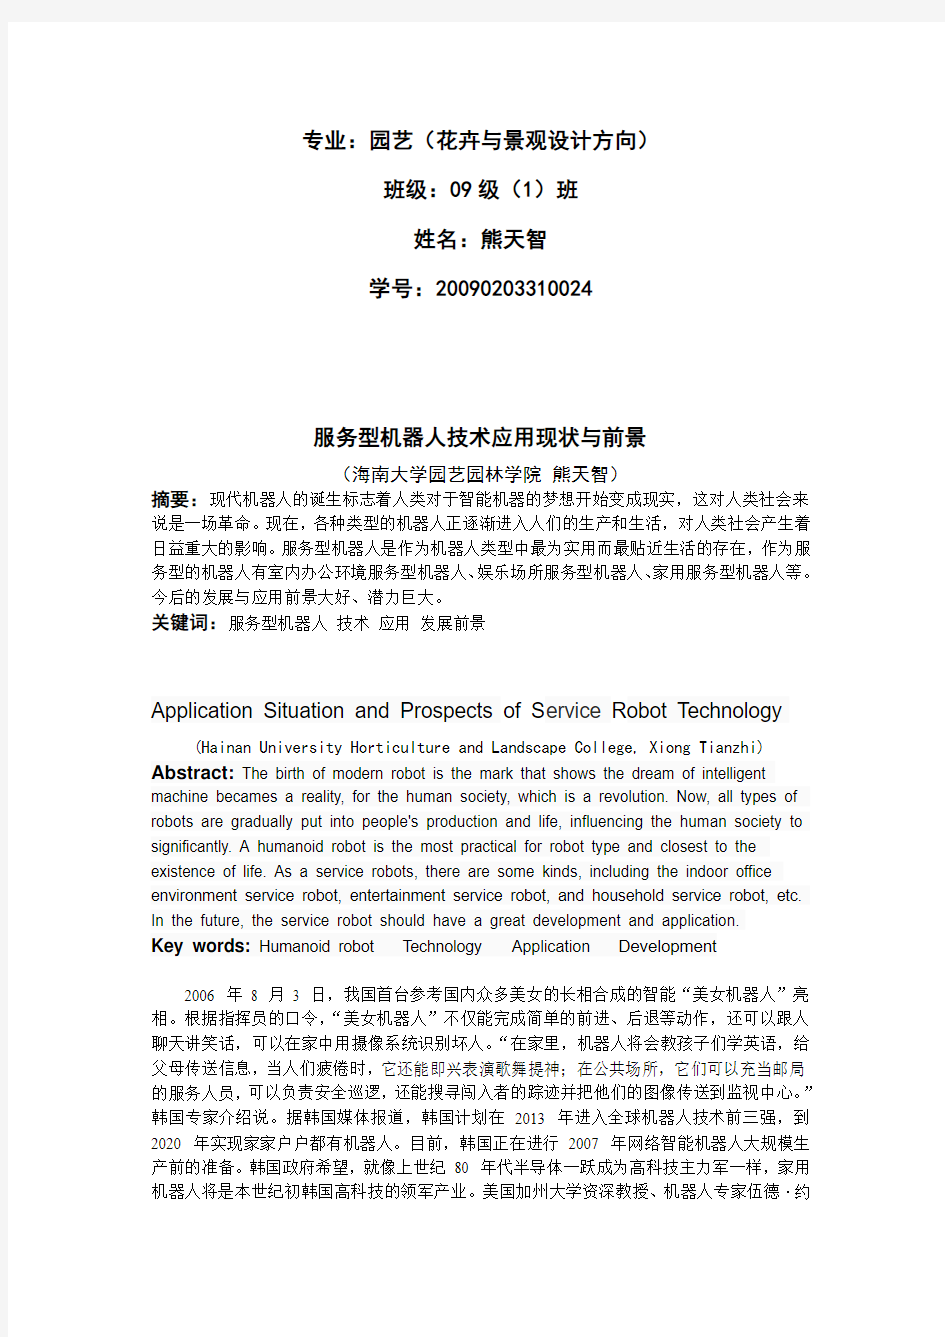 服务型机器人技术应用现状与前景(doc 8页)